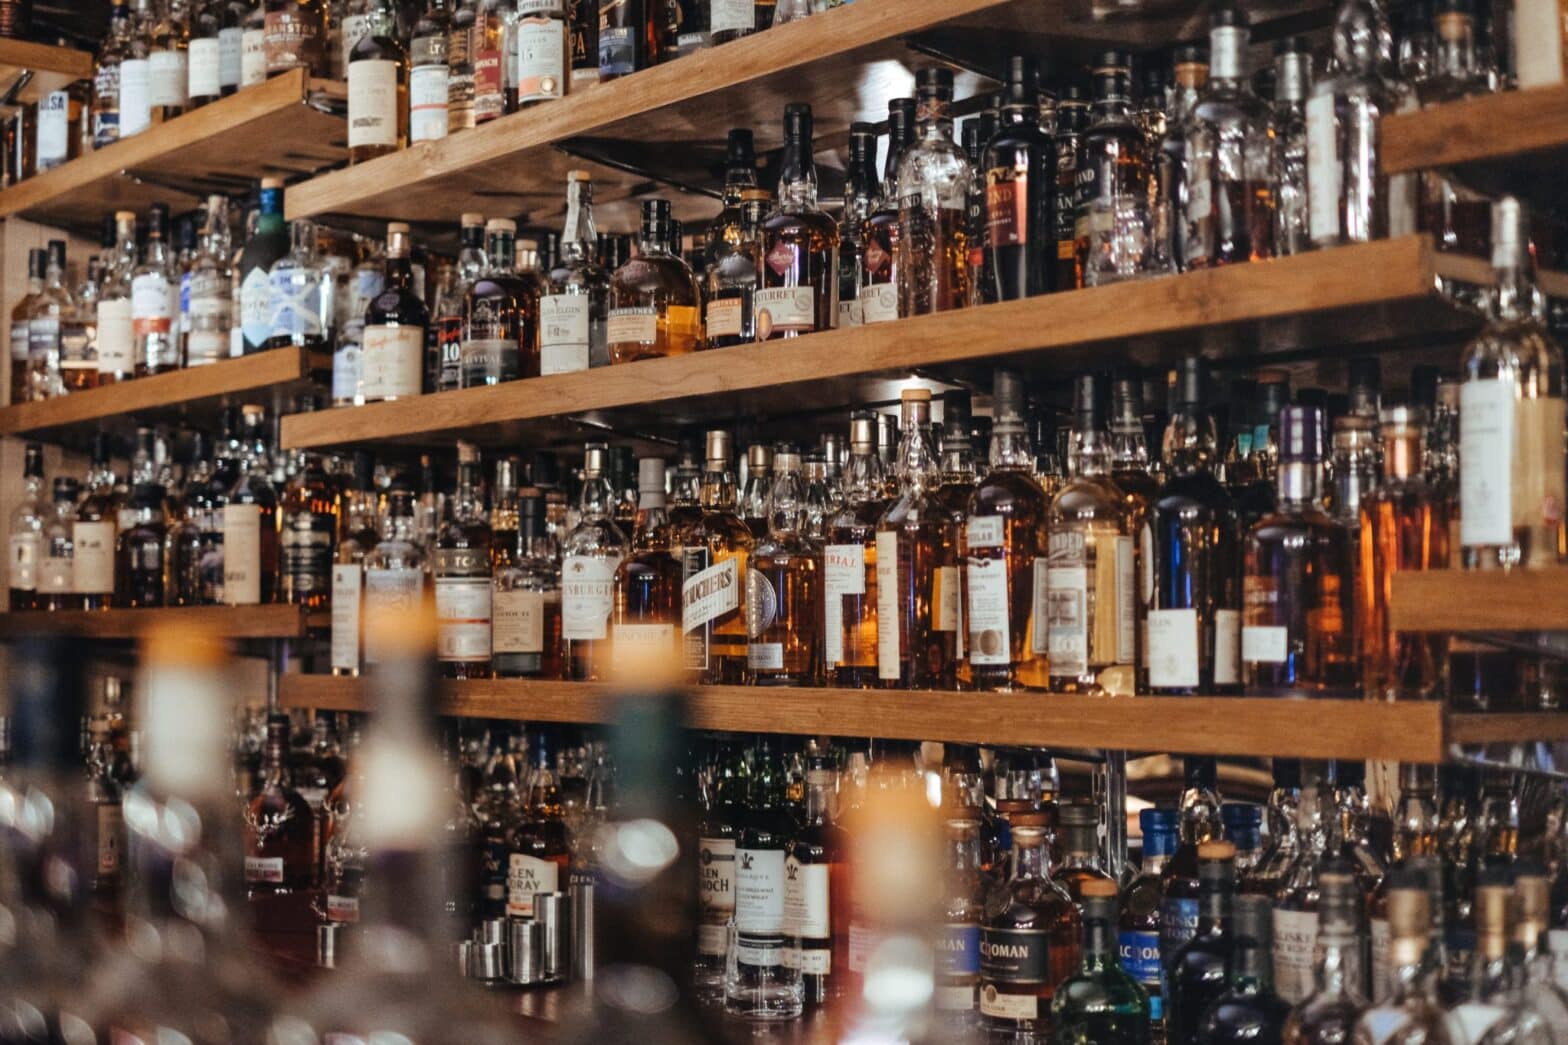 shelves of liquor